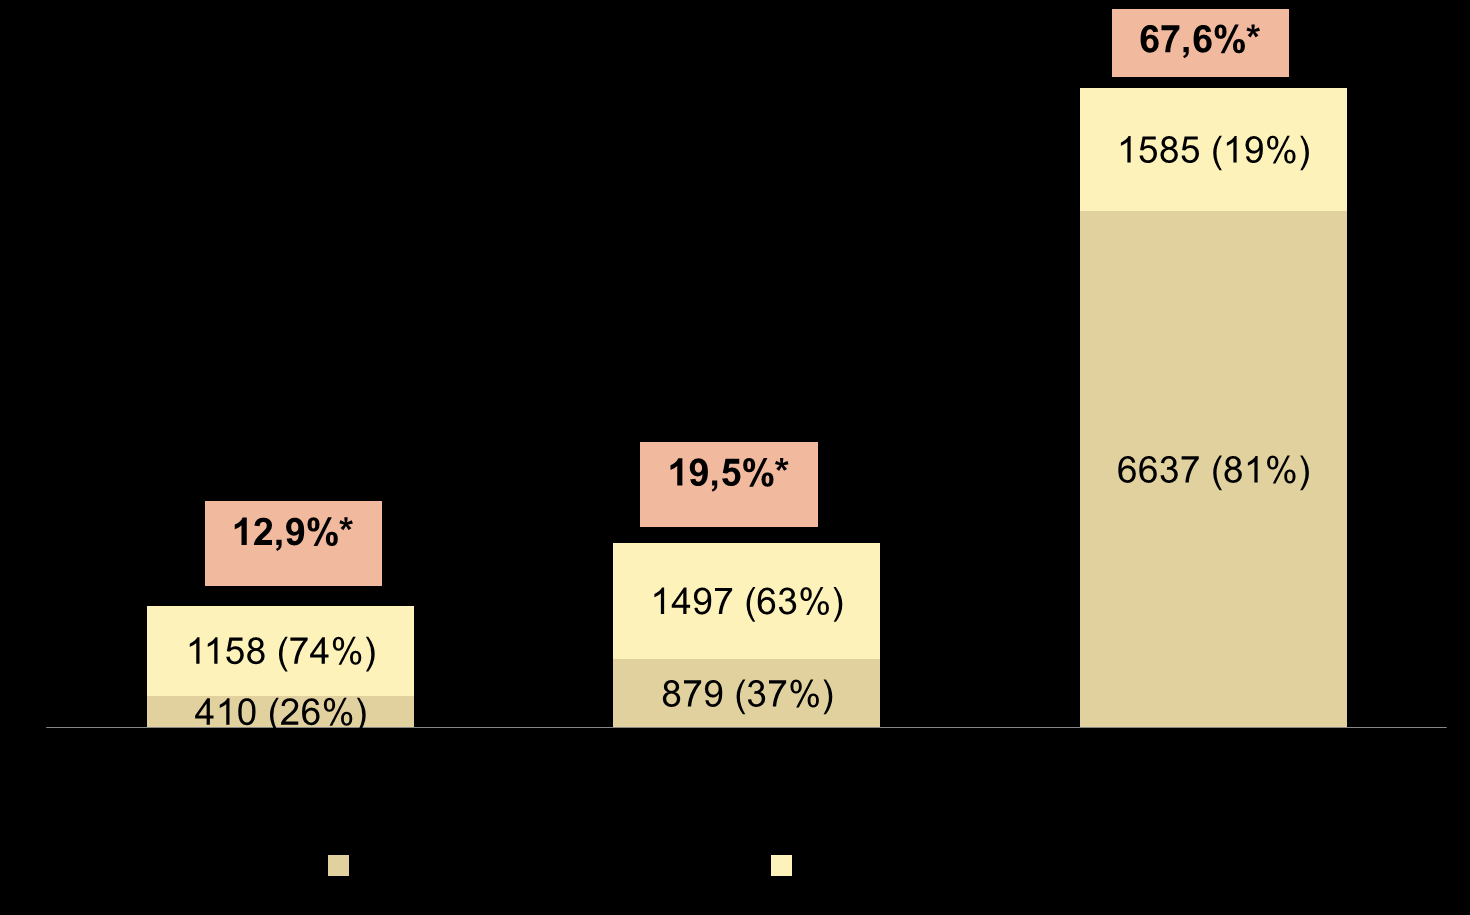 Distribuição da amostra de acordo com a renda percapita e o recebimento de